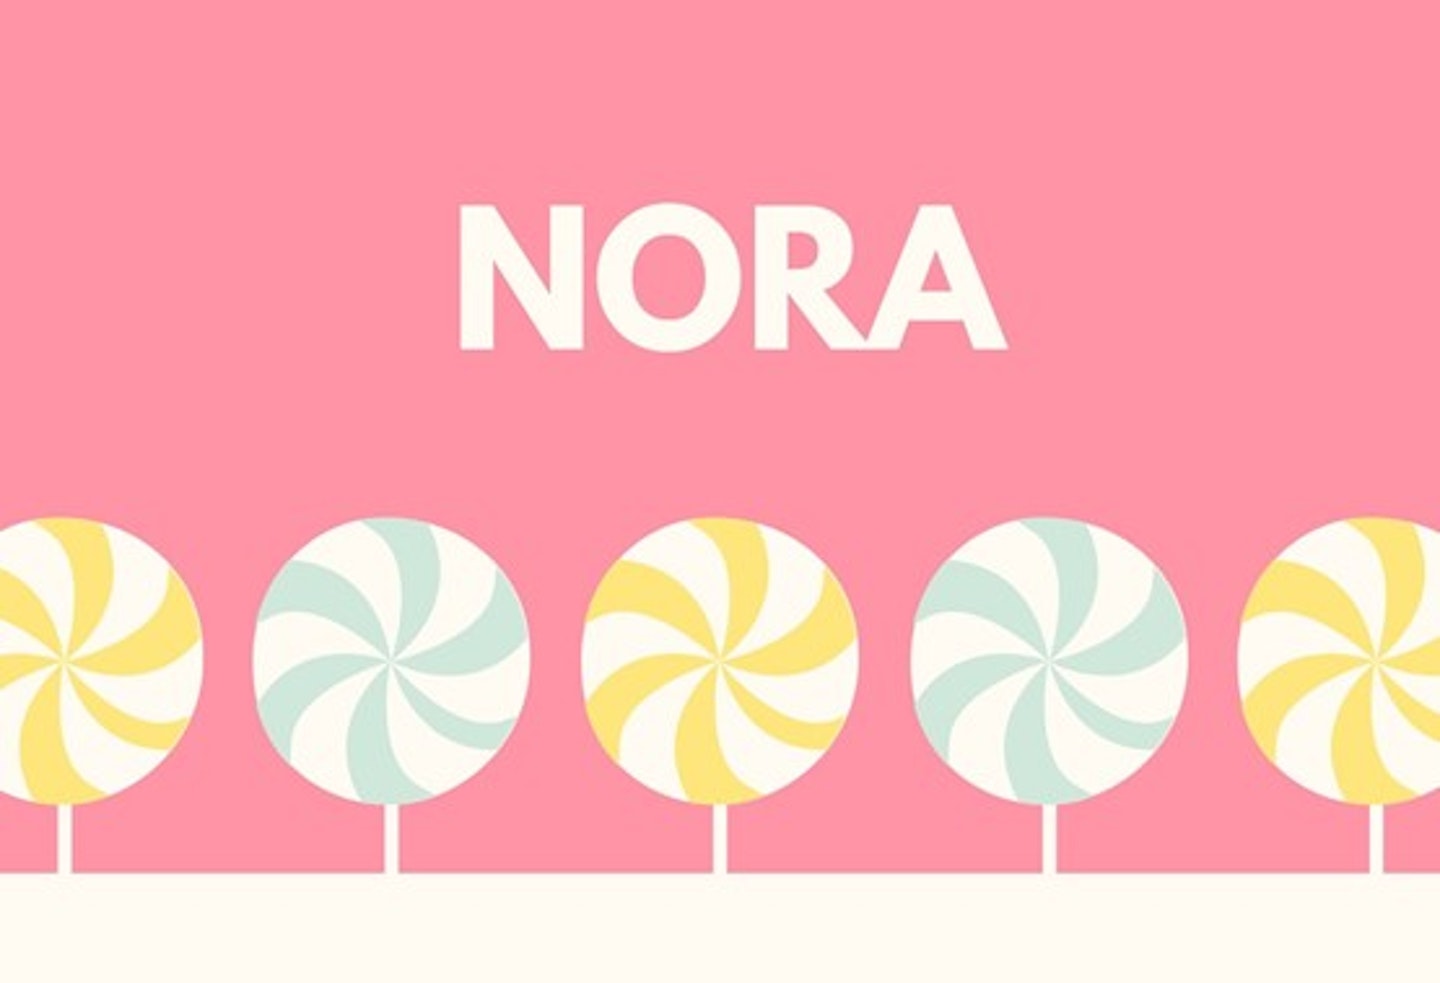 27) Nora